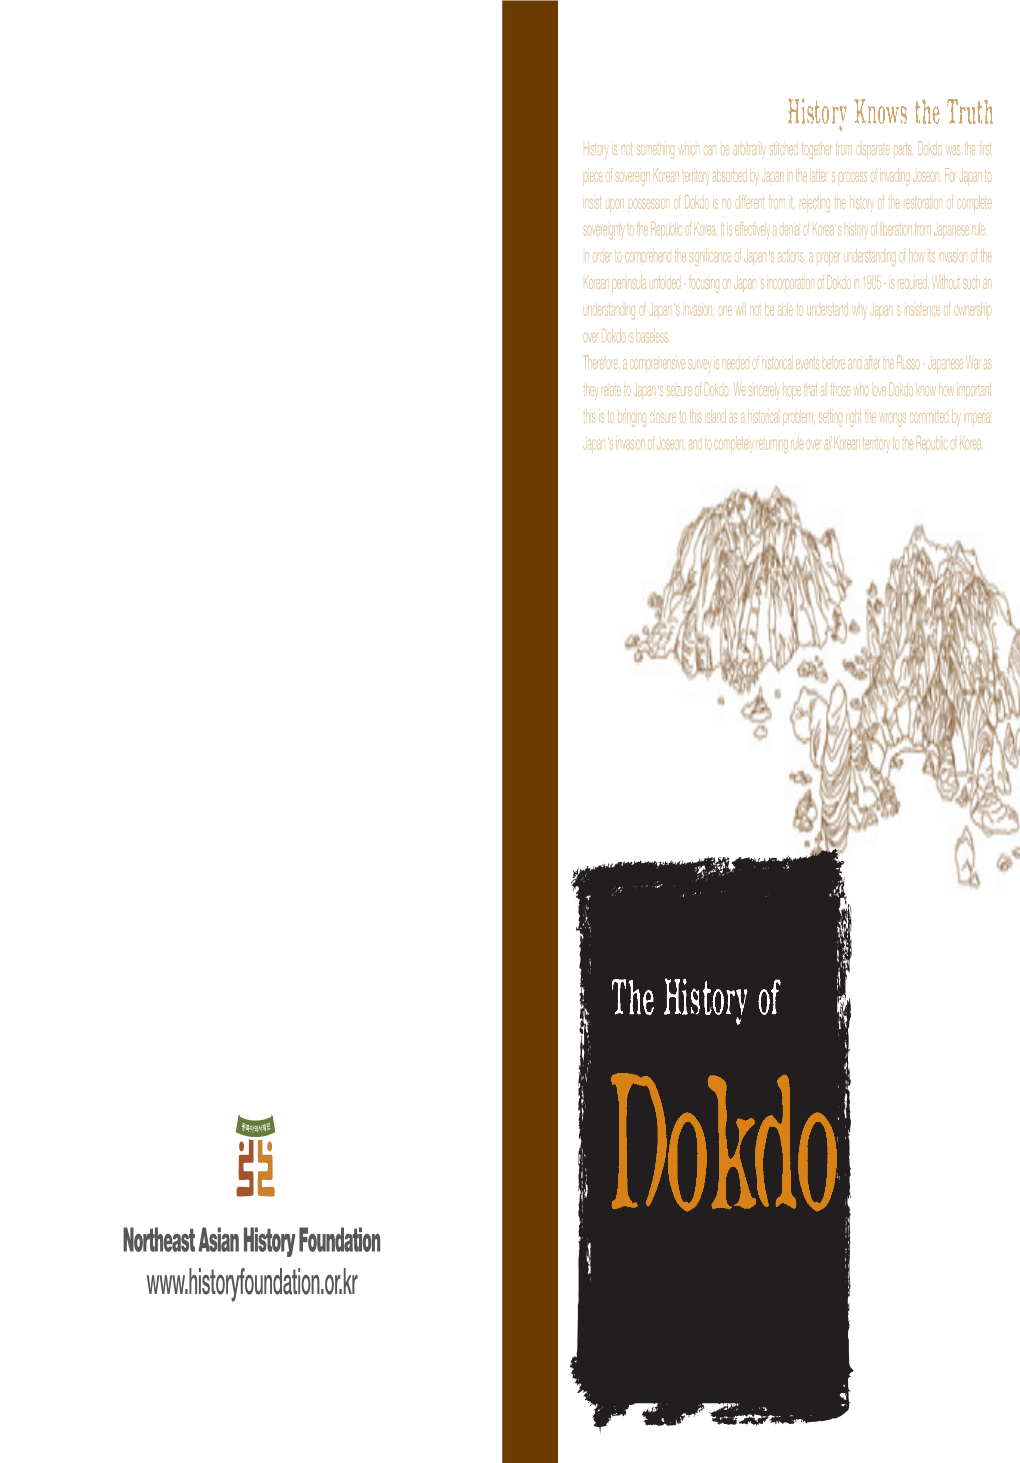 The History of Dokdo the History of Dokdo